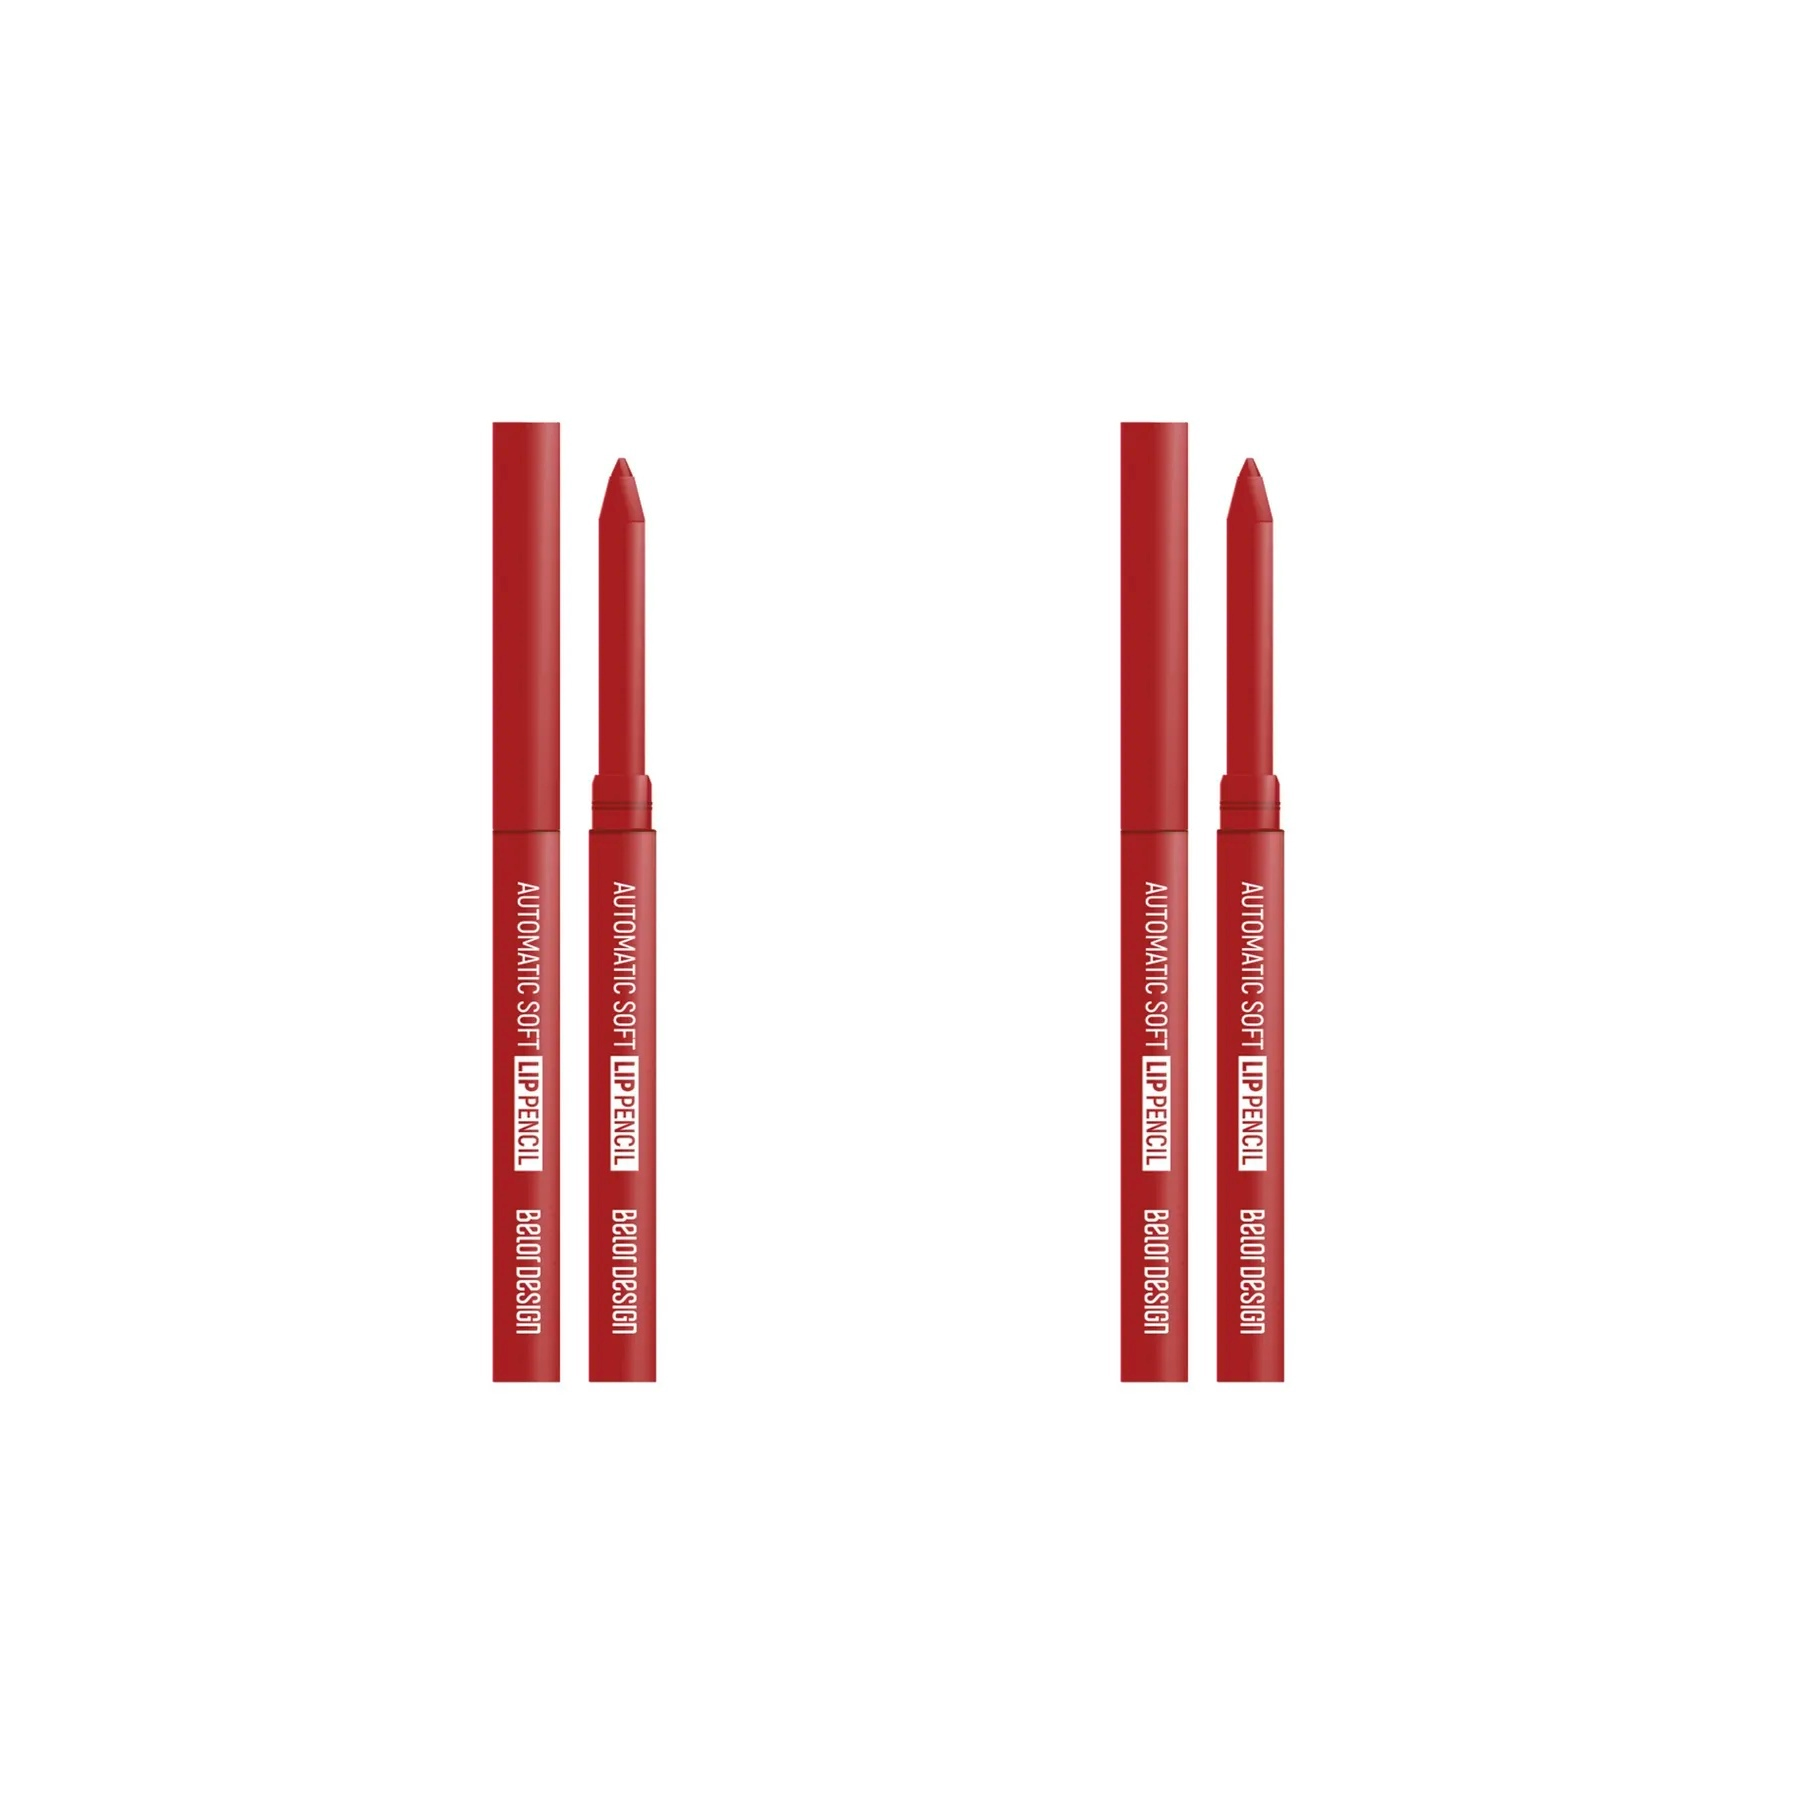 Карандаш для губ Belor Design Механический Automatic Soft Тон 206 Красный, 2 шт. карандаш для губ belor design механический automatic soft тон 206 красный 2 шт